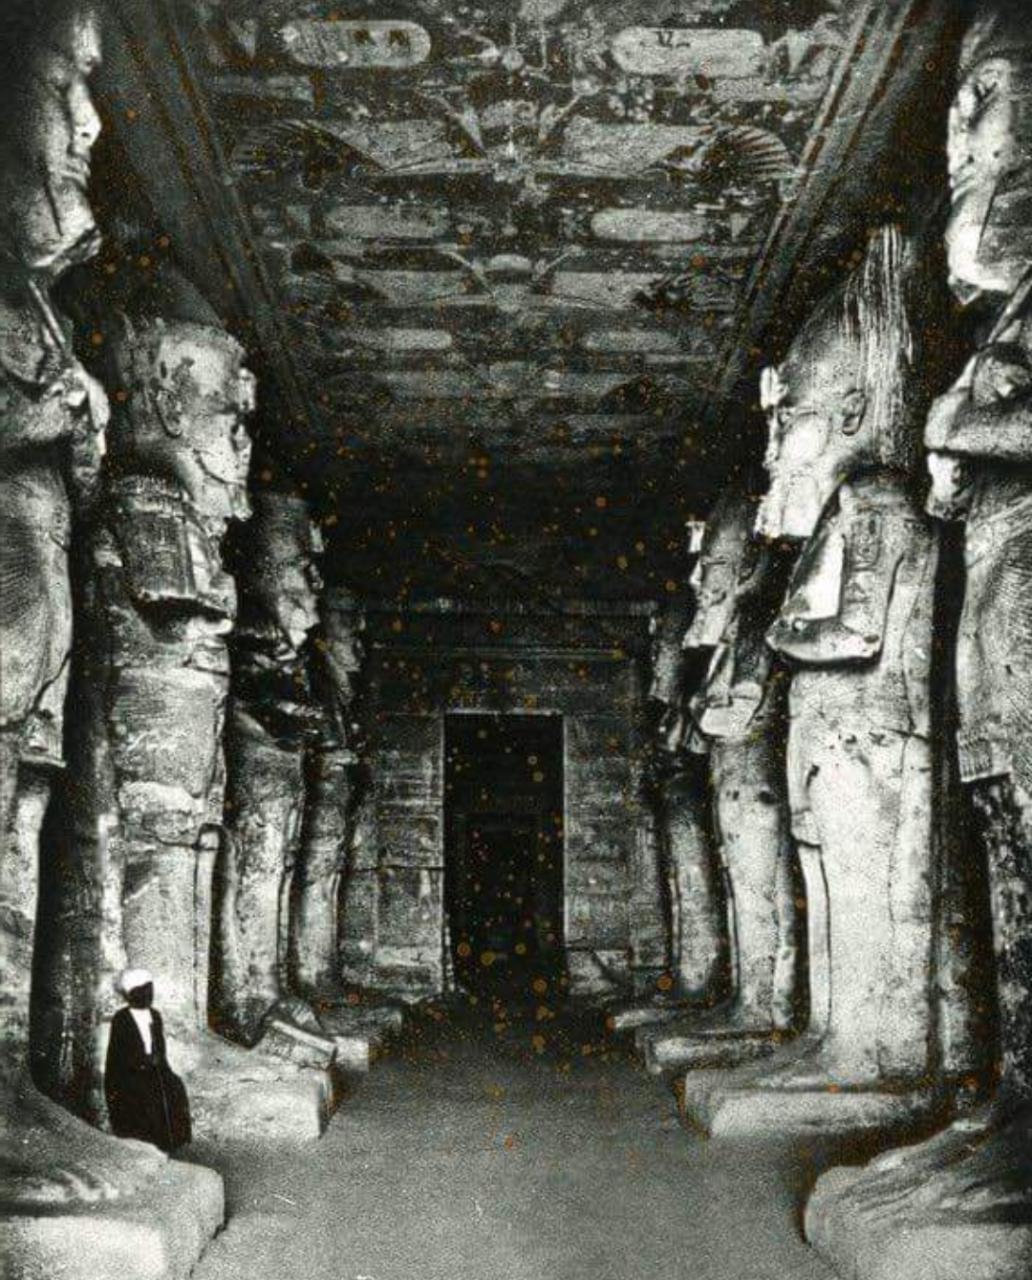 Fotografía antigua del Templo Mayor en Abu Simbel, Egipto. 🤩Miren la comparación entre el hombre (parte inferior izquierda) con las enormes estatuas.#egipto #ancestral #abusimbel #mundoocultoes